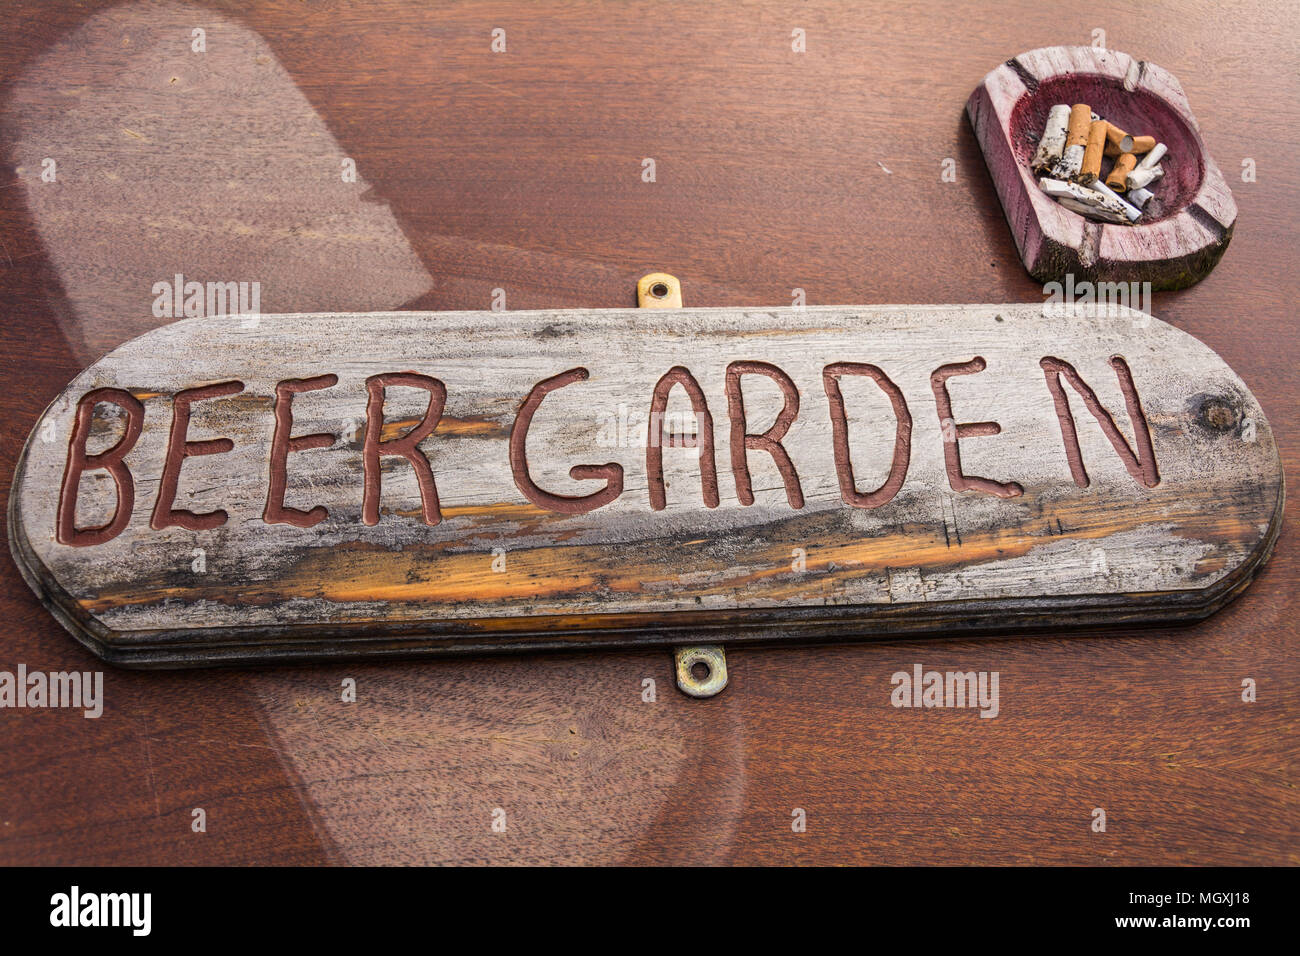 Rustico, meteo usurati, scolpito a mano segnaletica per un pub 'beer garden' sul tavolo di legno con un posacenere in legno. Potrebbe rappresentare il declino dei pub inglesi Foto Stock